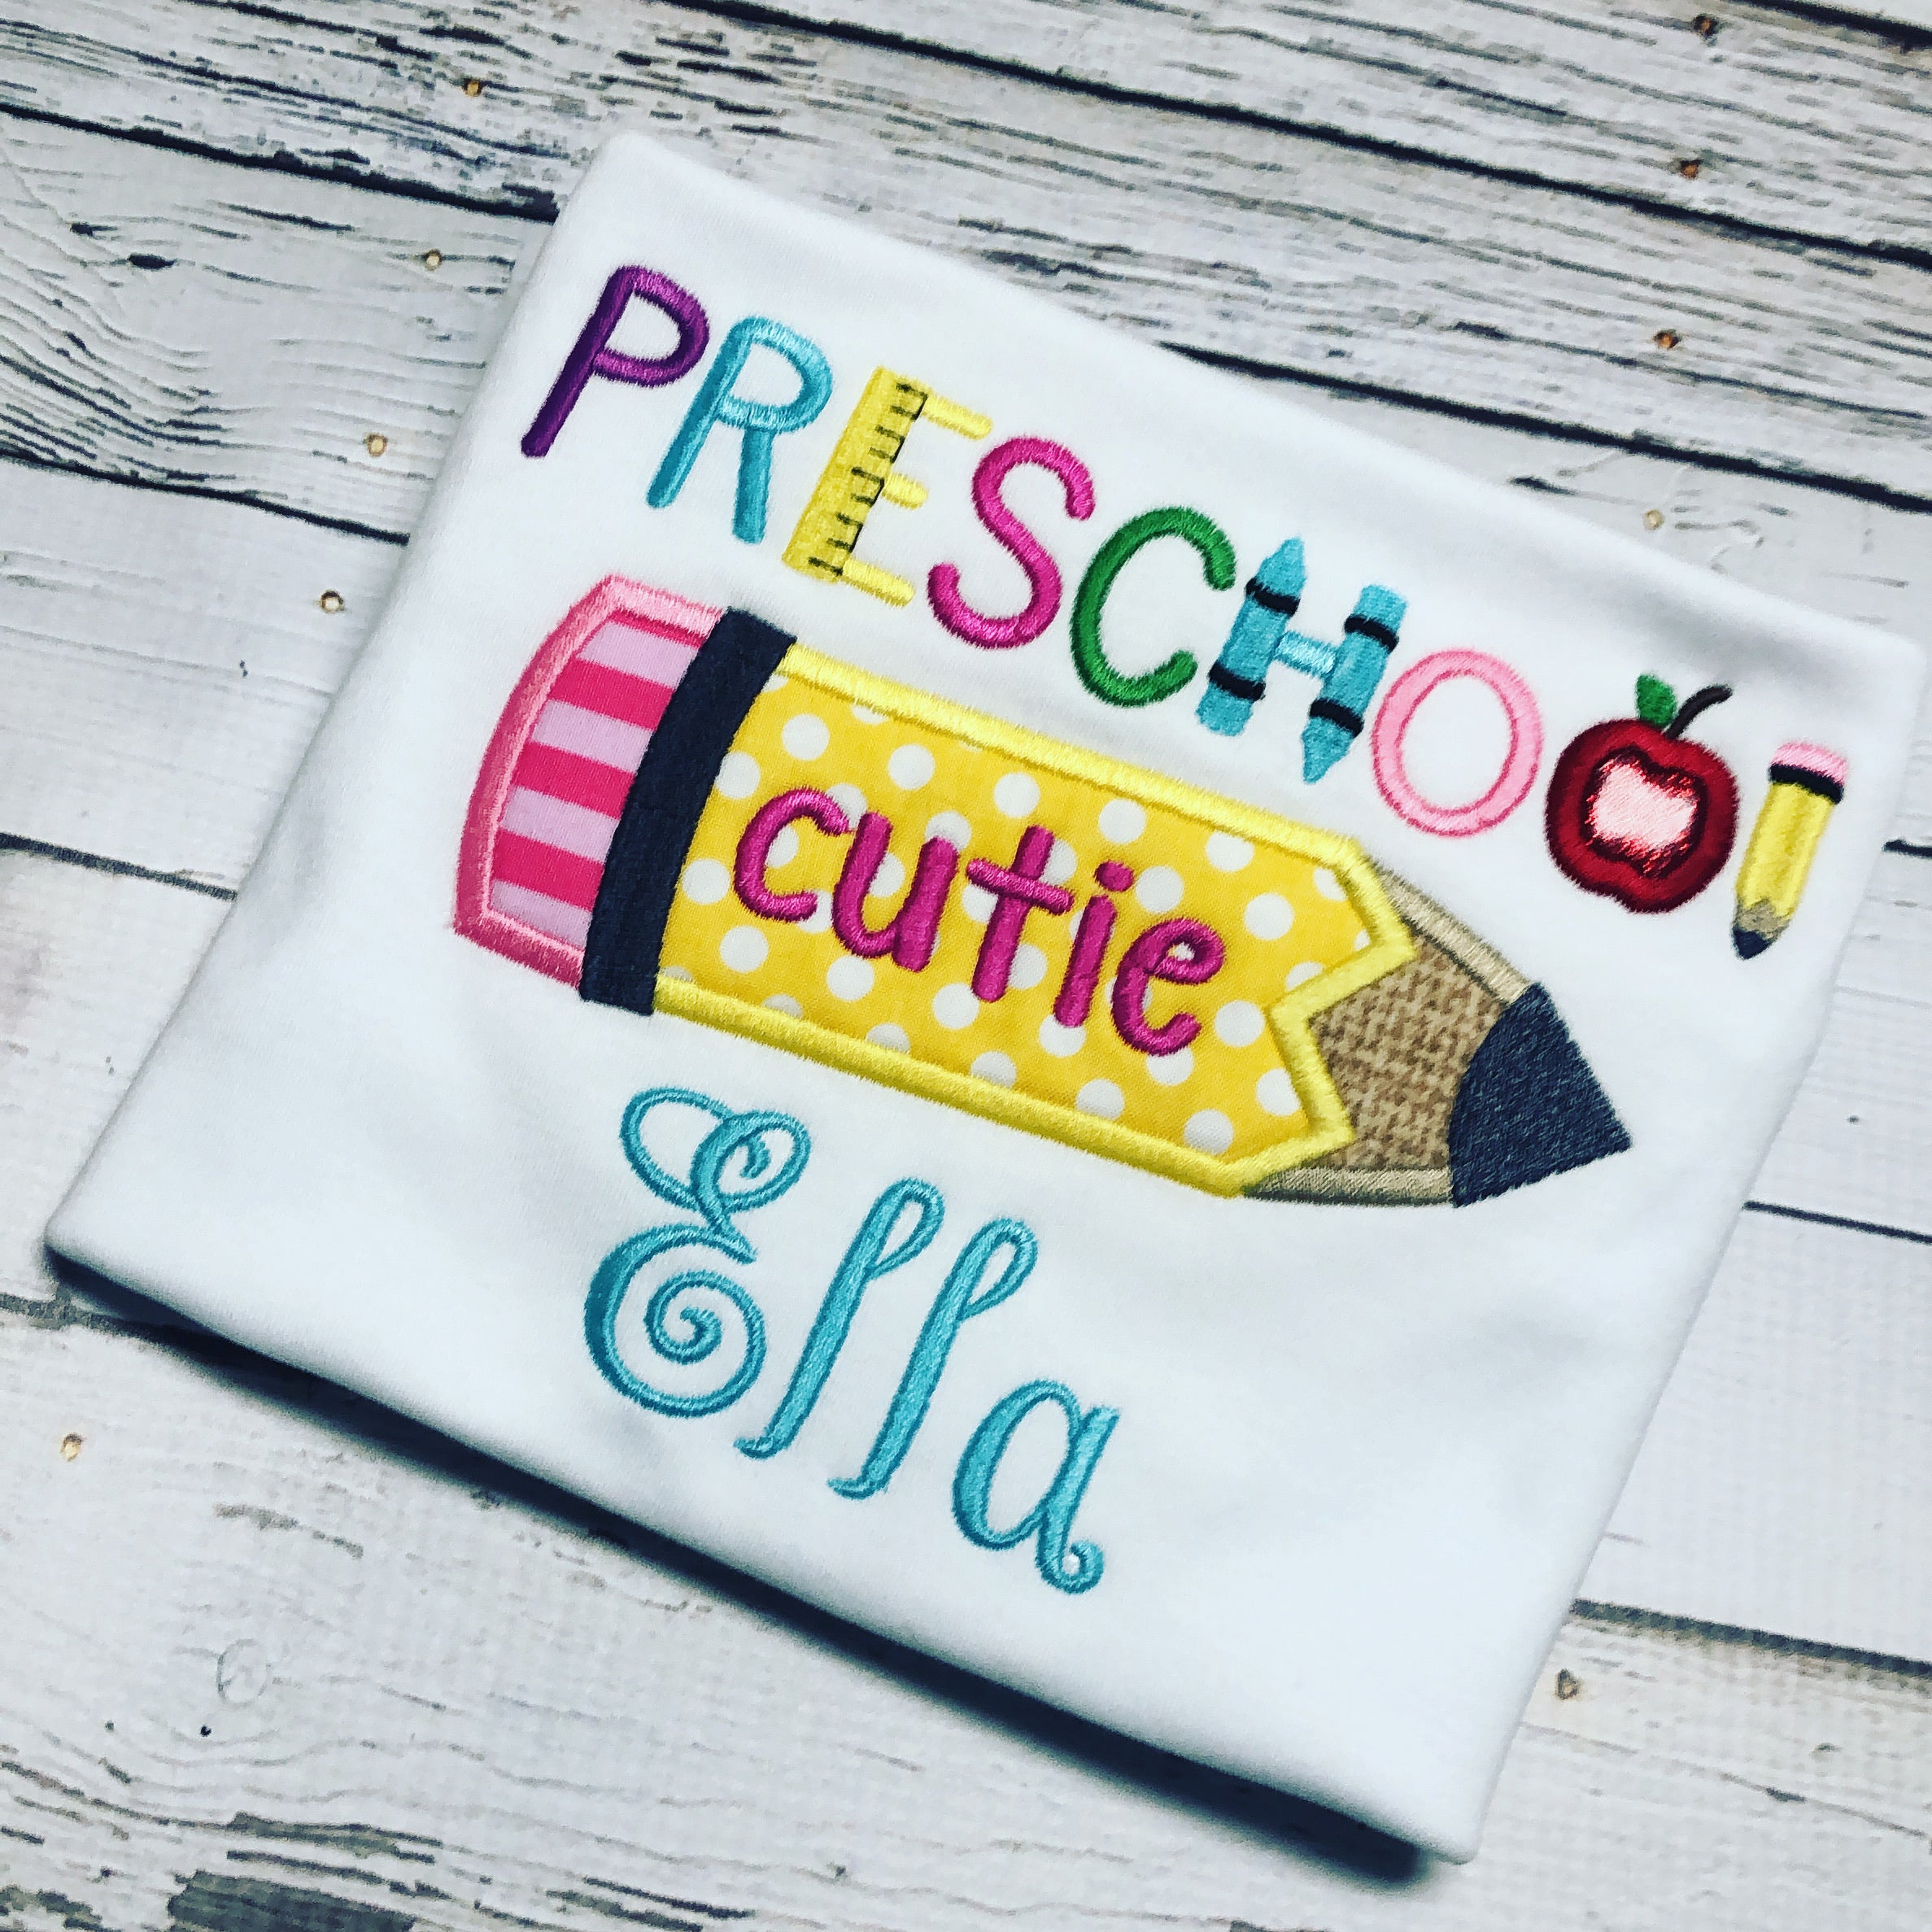 Preschool Cutie Appliqued Personalized Girl Ruffle Shirt